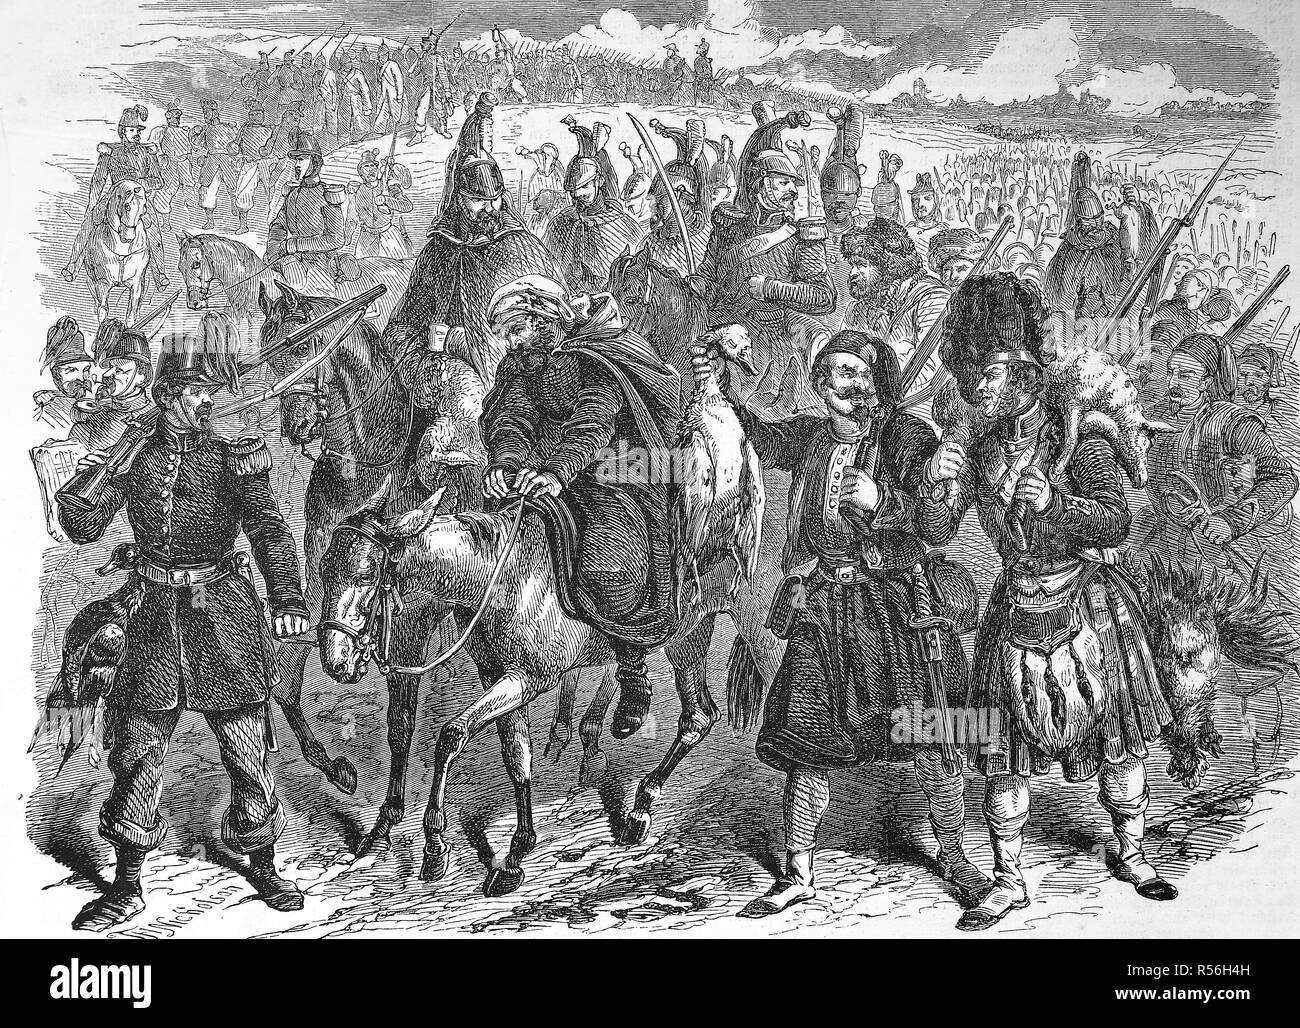 Retour de l'exploration et à la recherche de nourriture, les soldats anglais dans la guerre de Crimée, 1855, gravure sur bois, Angleterre Banque D'Images